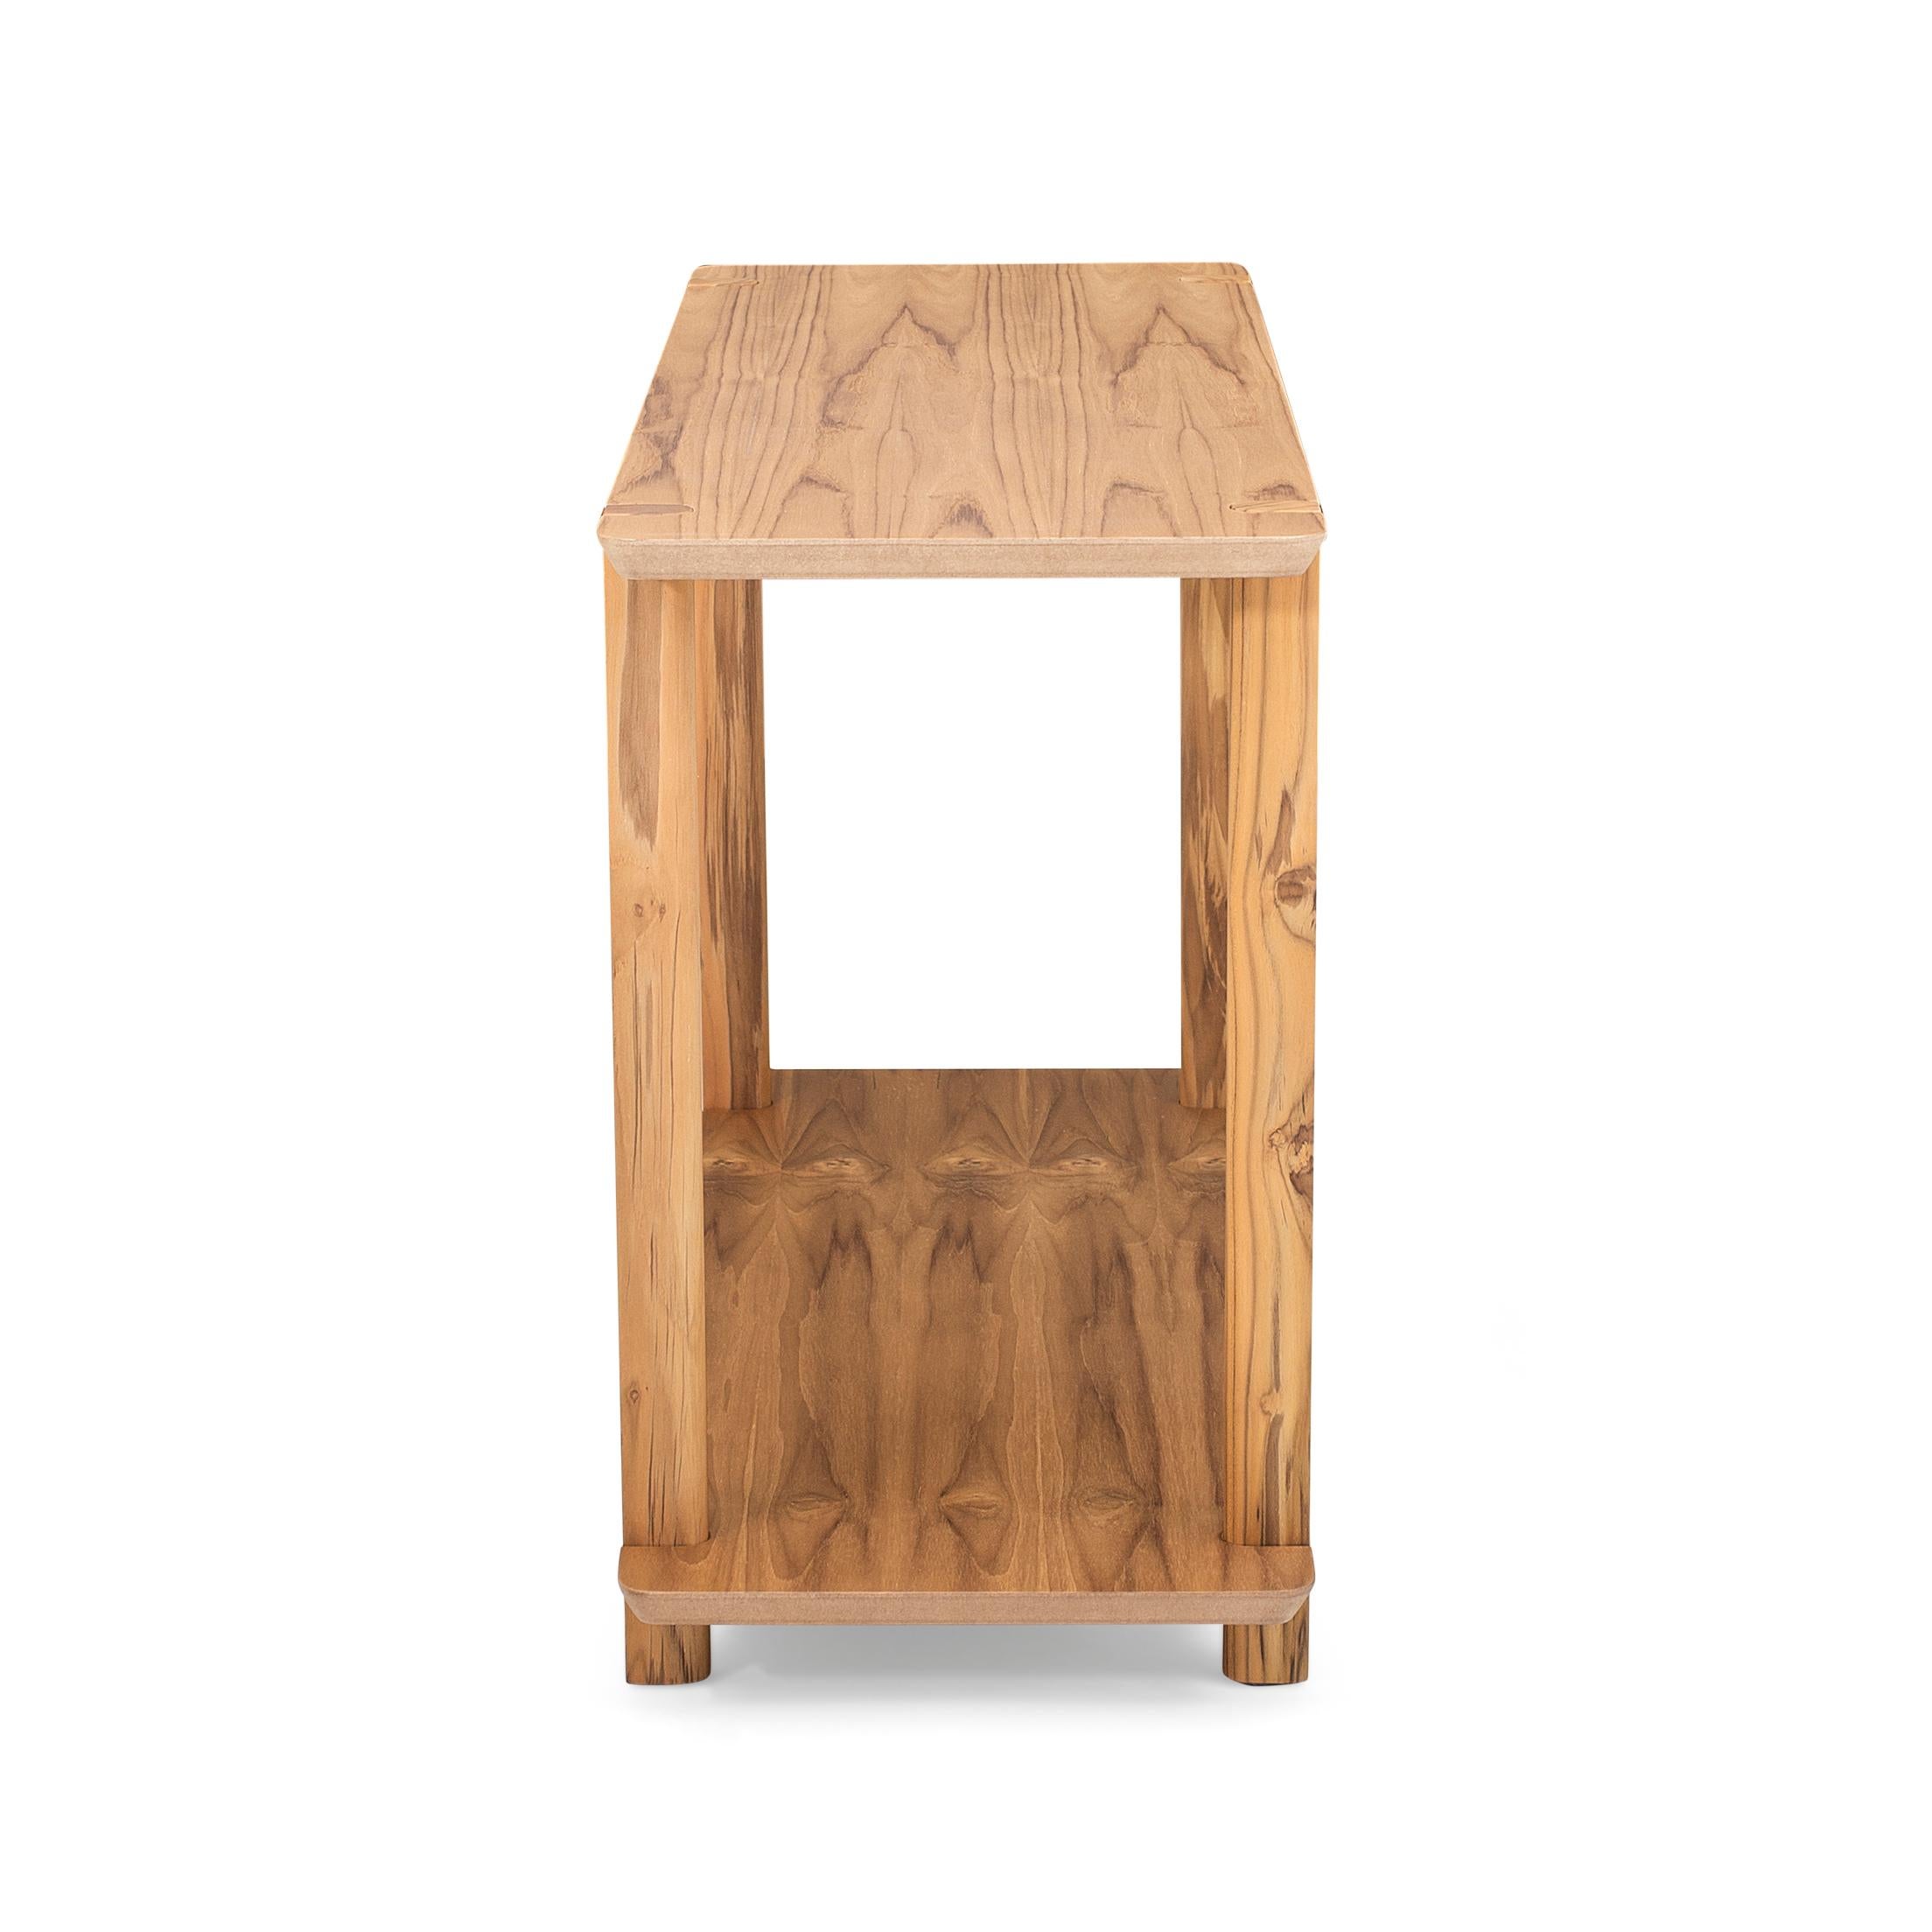 La console Clan est un autre meuble Uultis qui allie style et fonctionnalité avec sa finition en bois massif de teck et son plateau en MDF stratifié. Cette console peut être utilisée dans diverses pièces de votre maison, notamment dans la chambre à